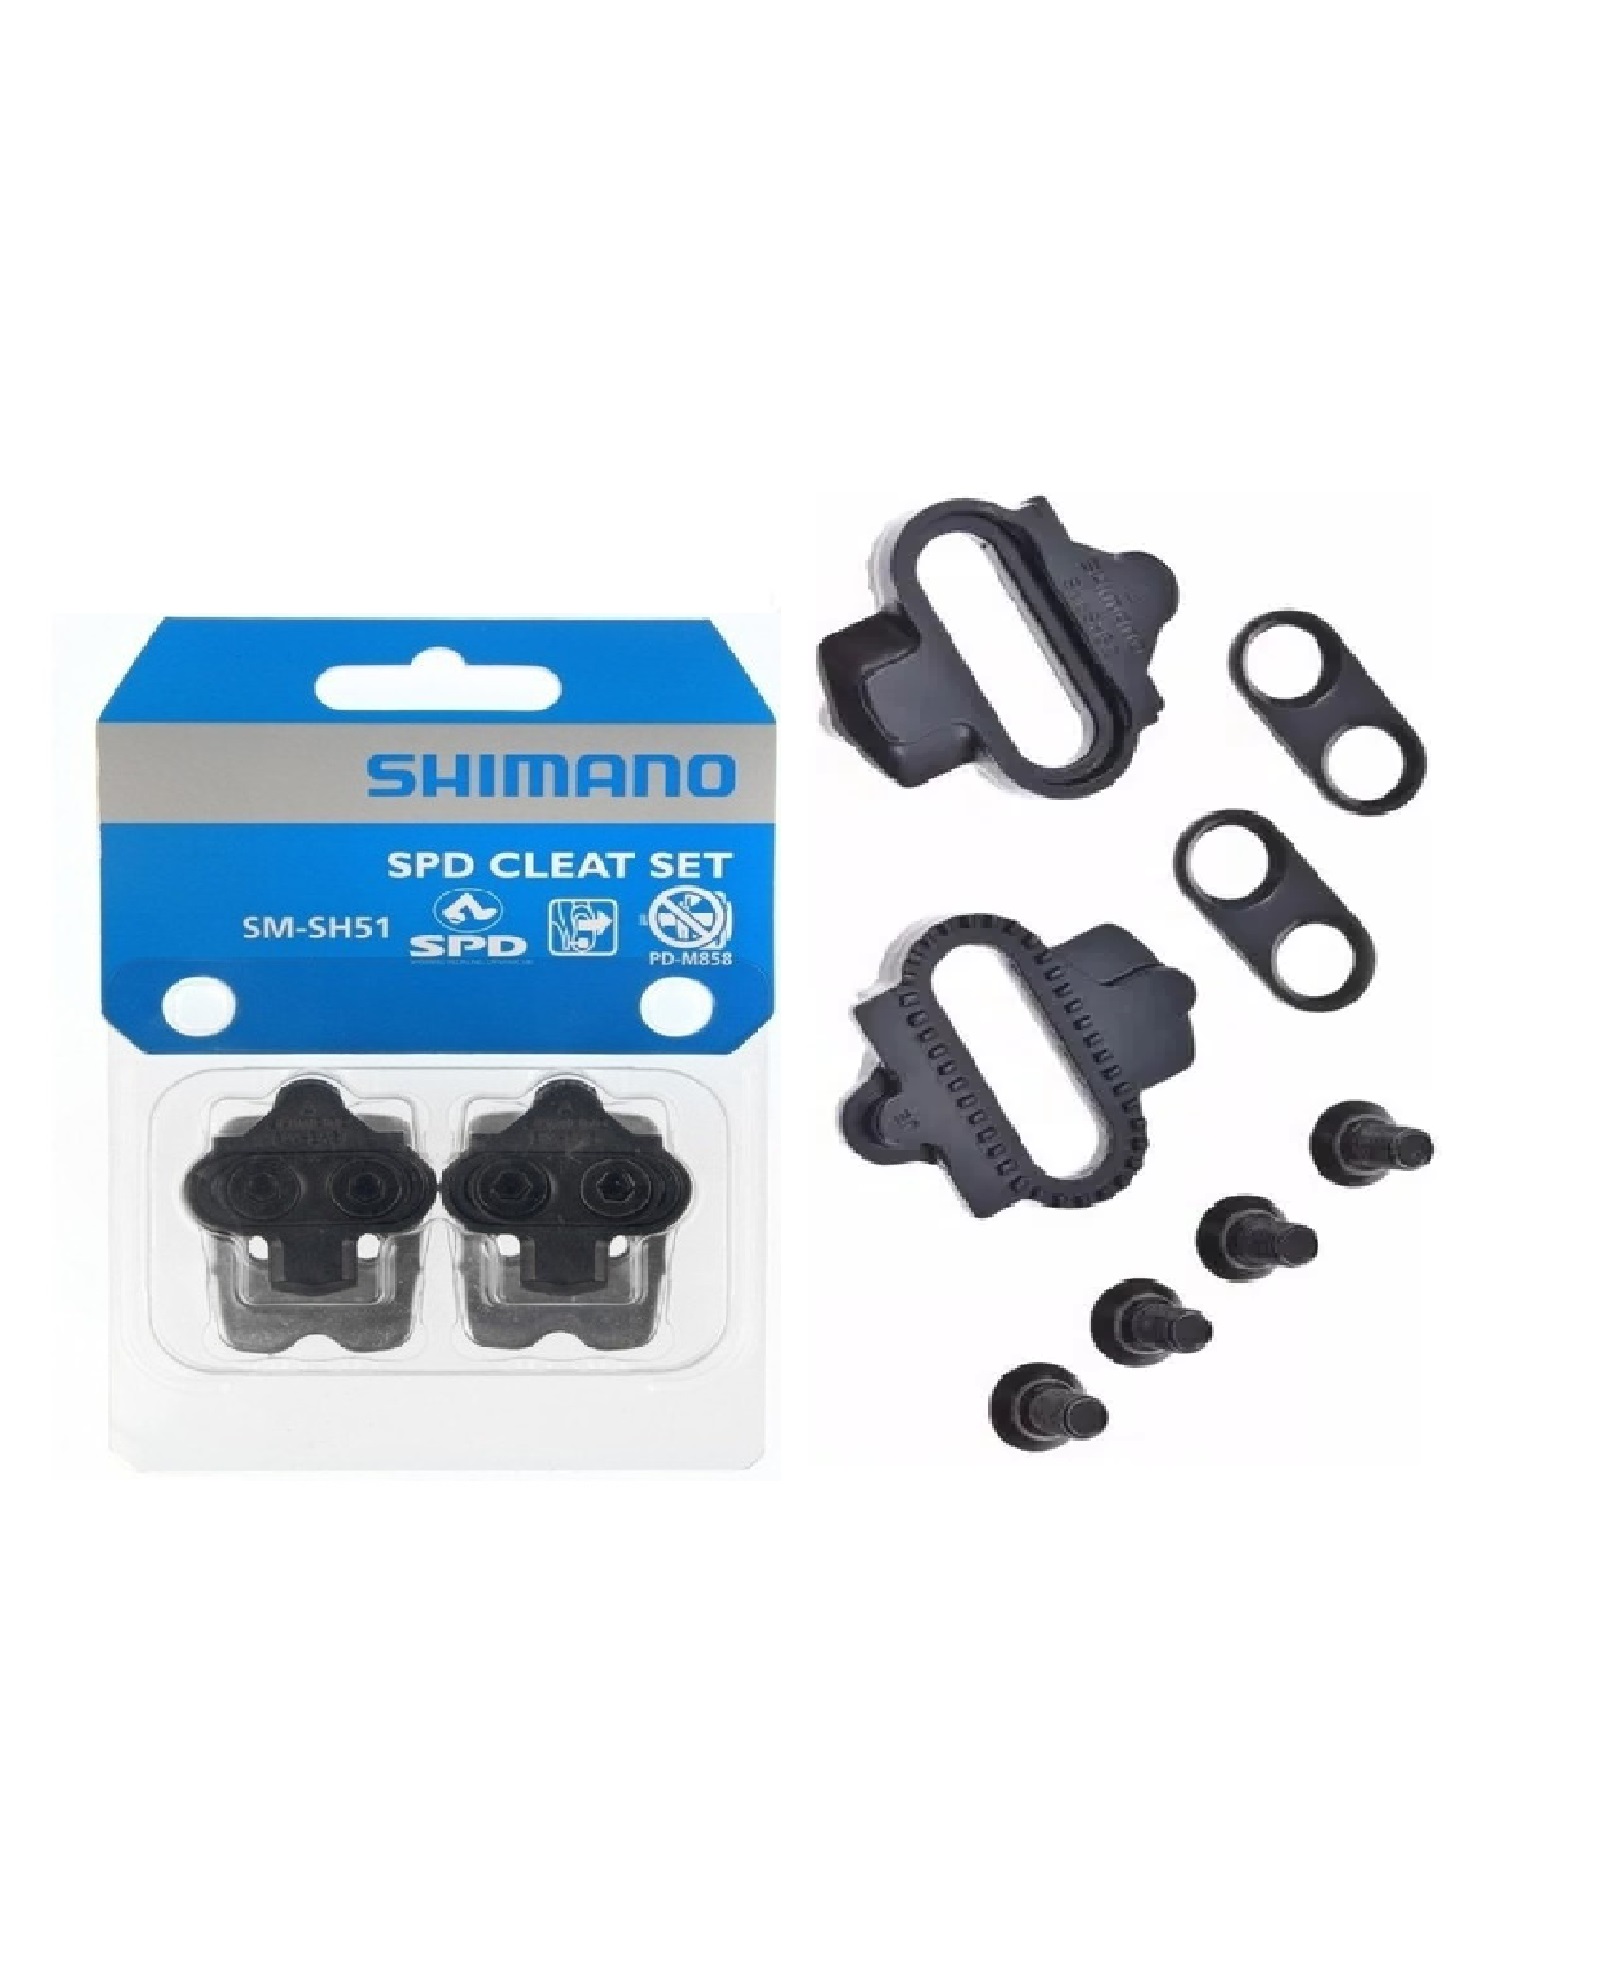 Chocles Calas Shimano Sh-51 Para Mtb/spinning/enduro/dh – SuperCiclas